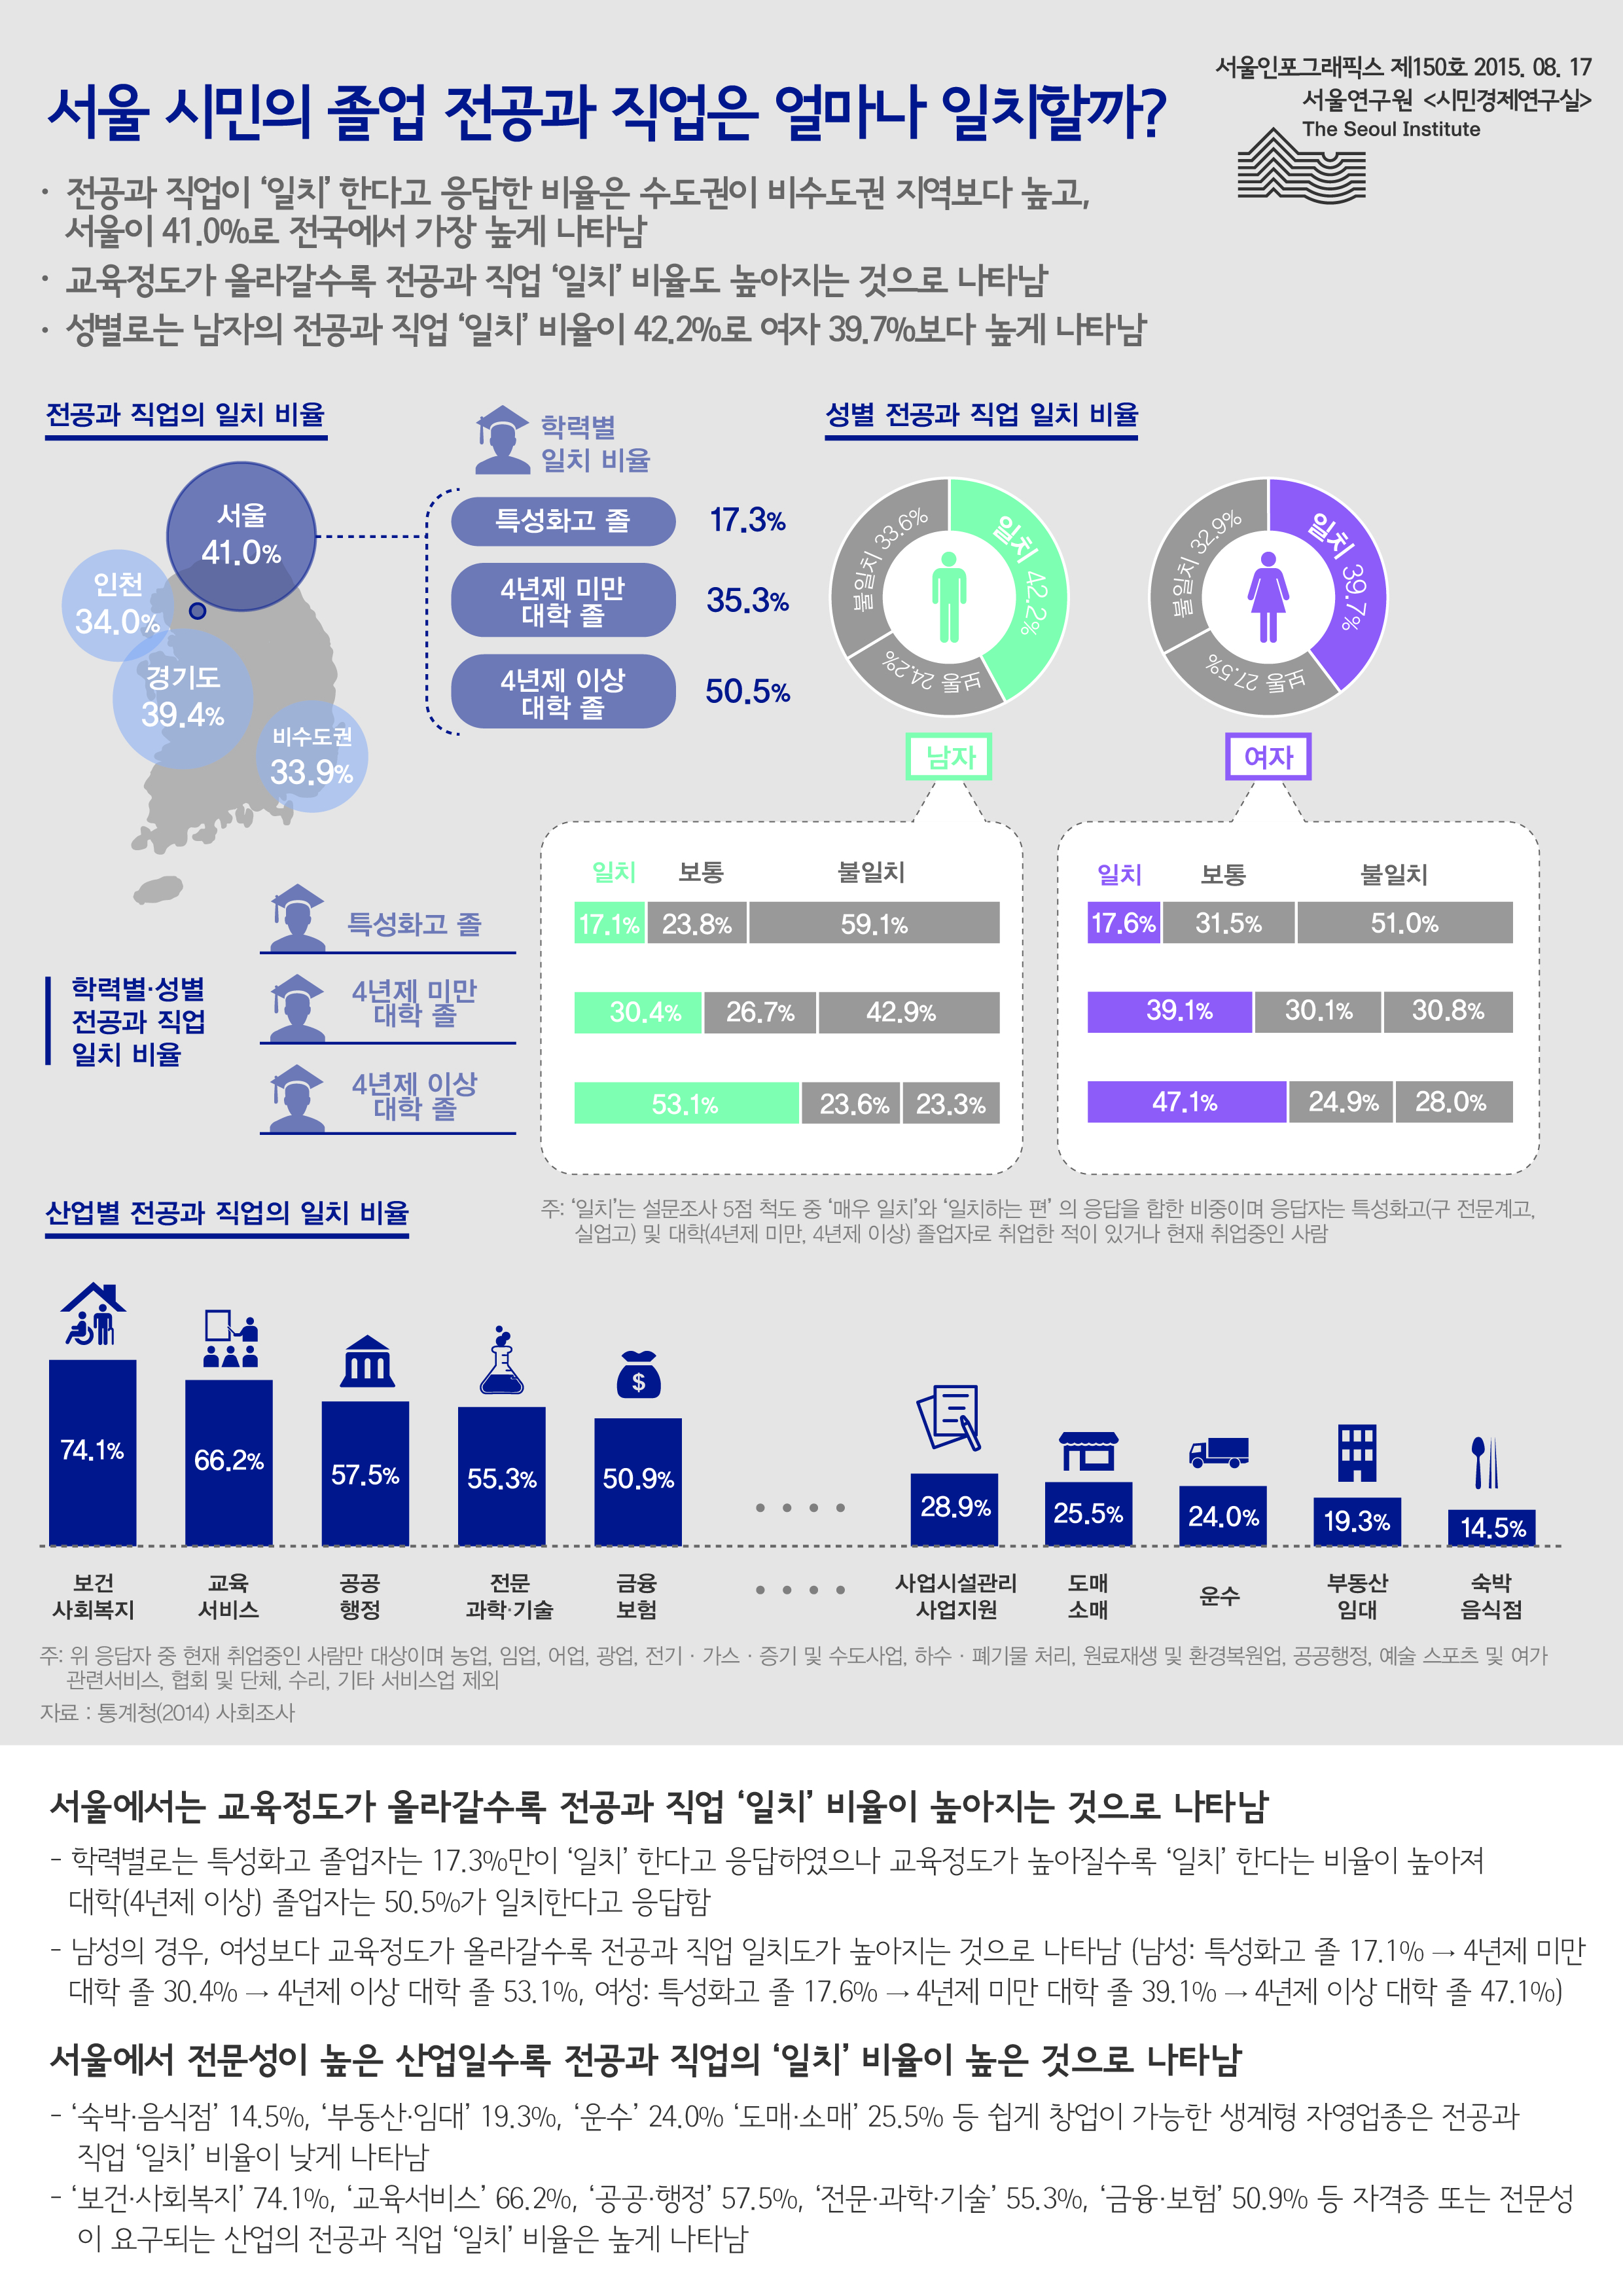 서울 시민의 졸업 전공과 직업은 얼마나 일치할까? 서울인포그래픽스 제150호 2015년 8월 17일 전공과 직업이 ‘일치’ 한다고 응답한 비율은 수도권이 비수도권 지역보다 높고,서울이 41.0%로 전국에서 가장 높게 나타남, 교육정도가 올라갈수록 전공과 직업 ‘일치’ 비율도 높아지는 것으로 나타남, 성별로는 남자의 전공과 직업 ‘일치’ 비율이 42.2%로 여자 39.7%보다 높게 나타남으로 정리될 수 있습니다. 인포그래픽으로 제공되는 그래픽은 하단에 표로 자세히 제공됩니다.